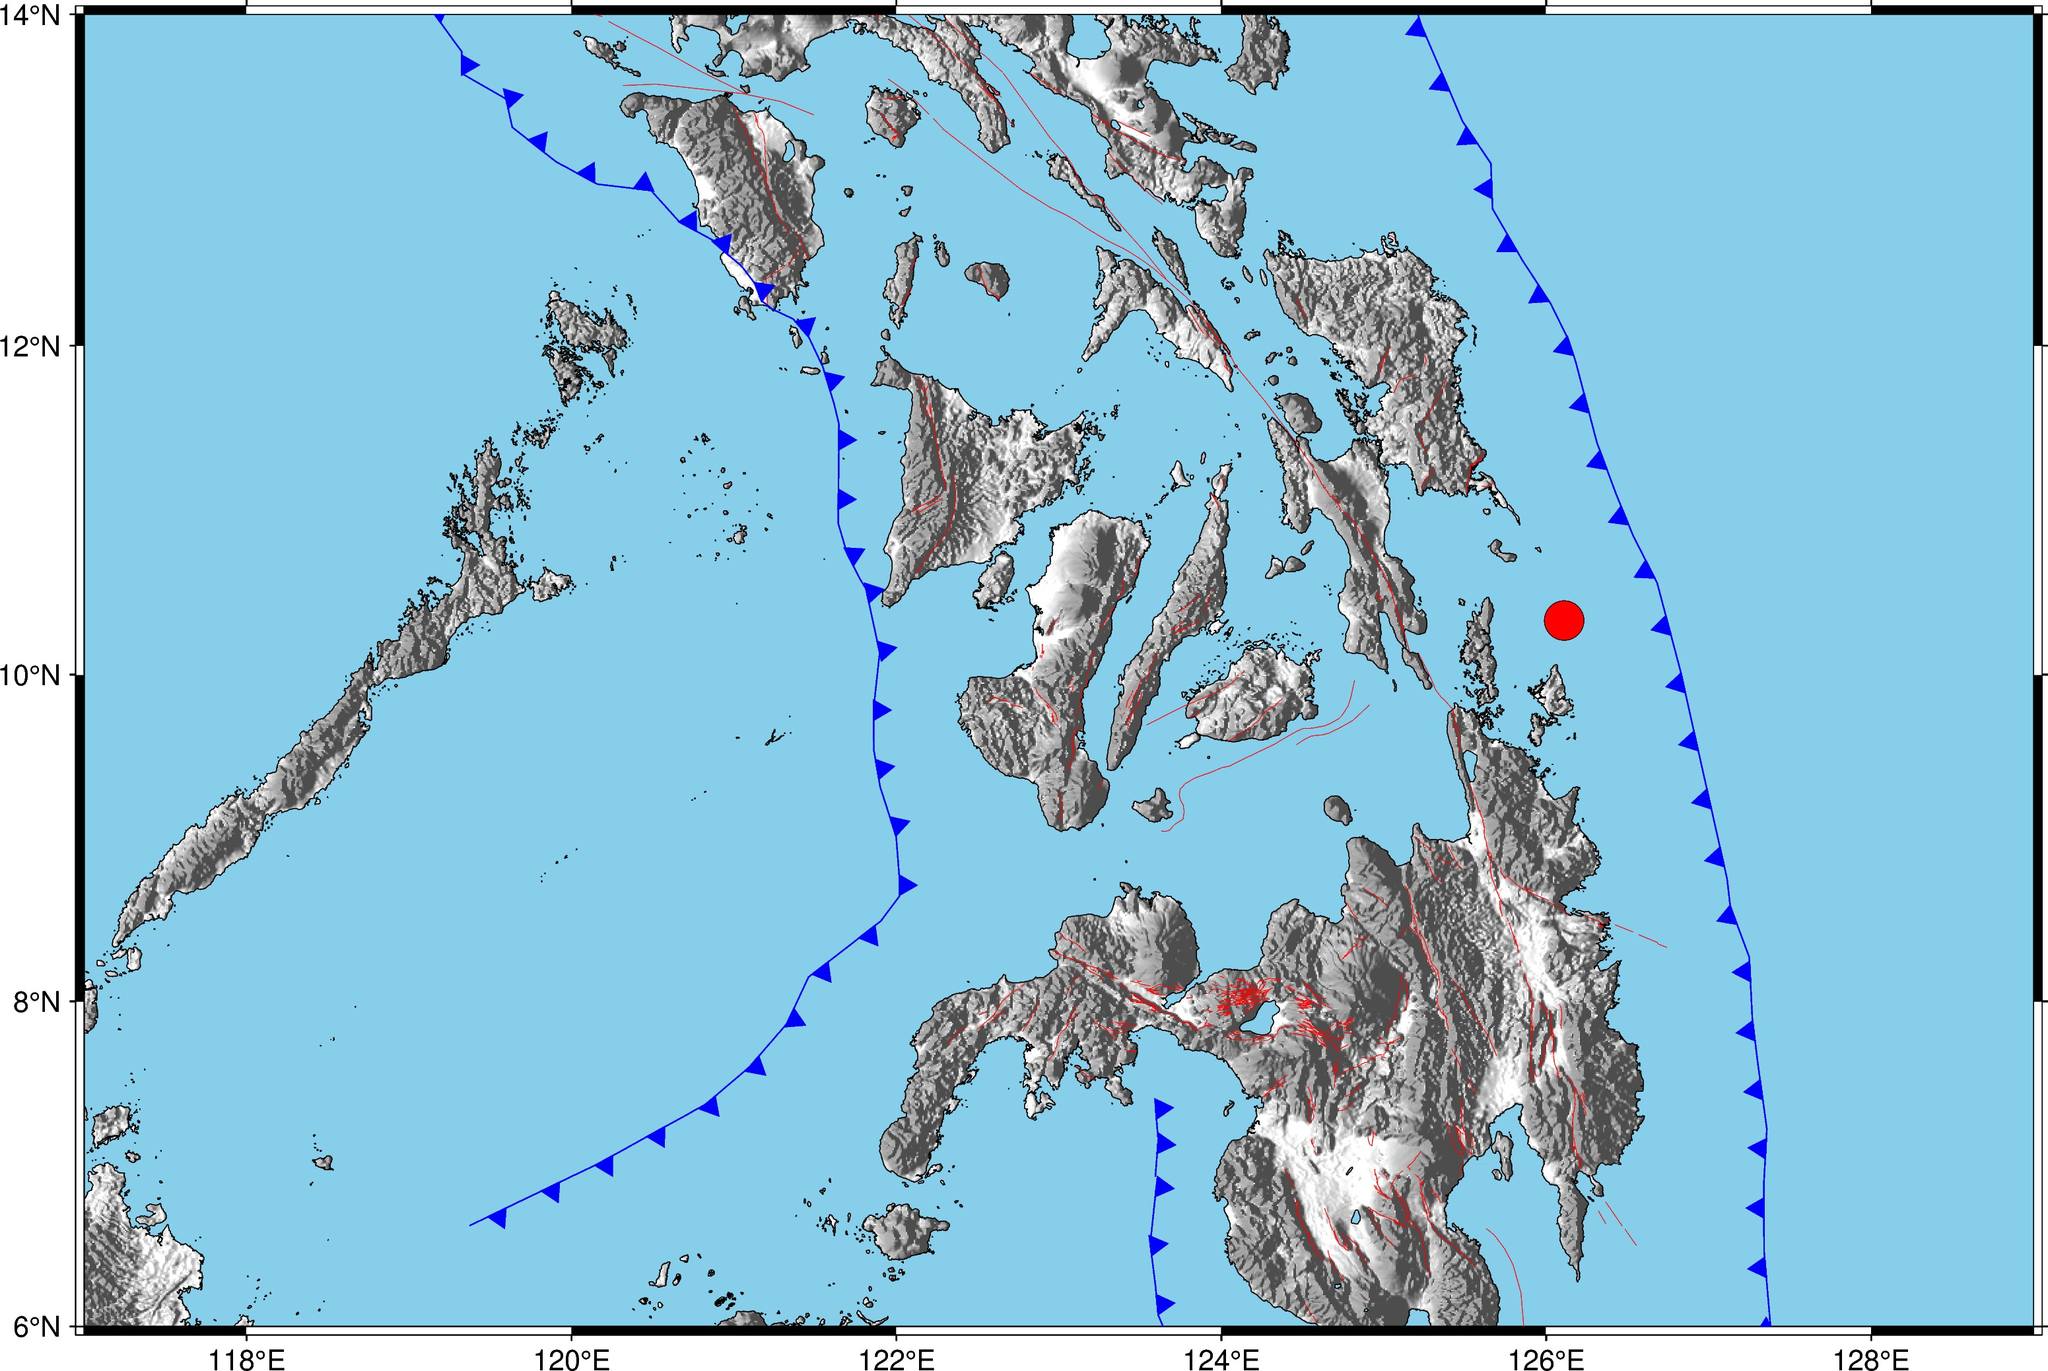 A 4.4 magnitude earthquake strikes the city of Surigao del Norte